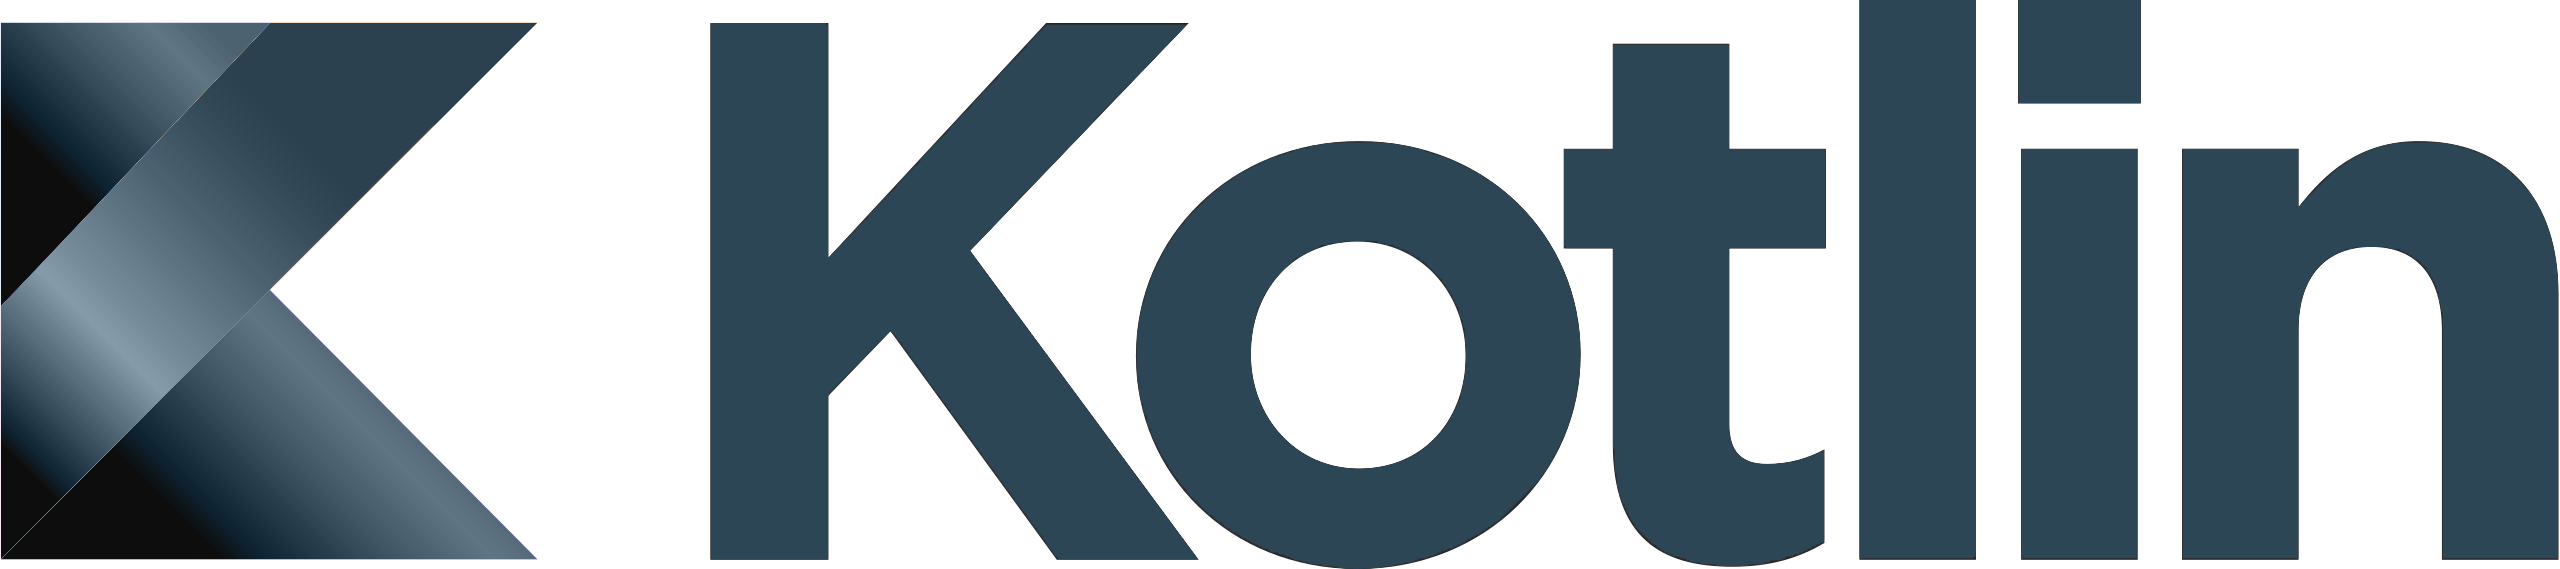 Kotlin_logo.svg2